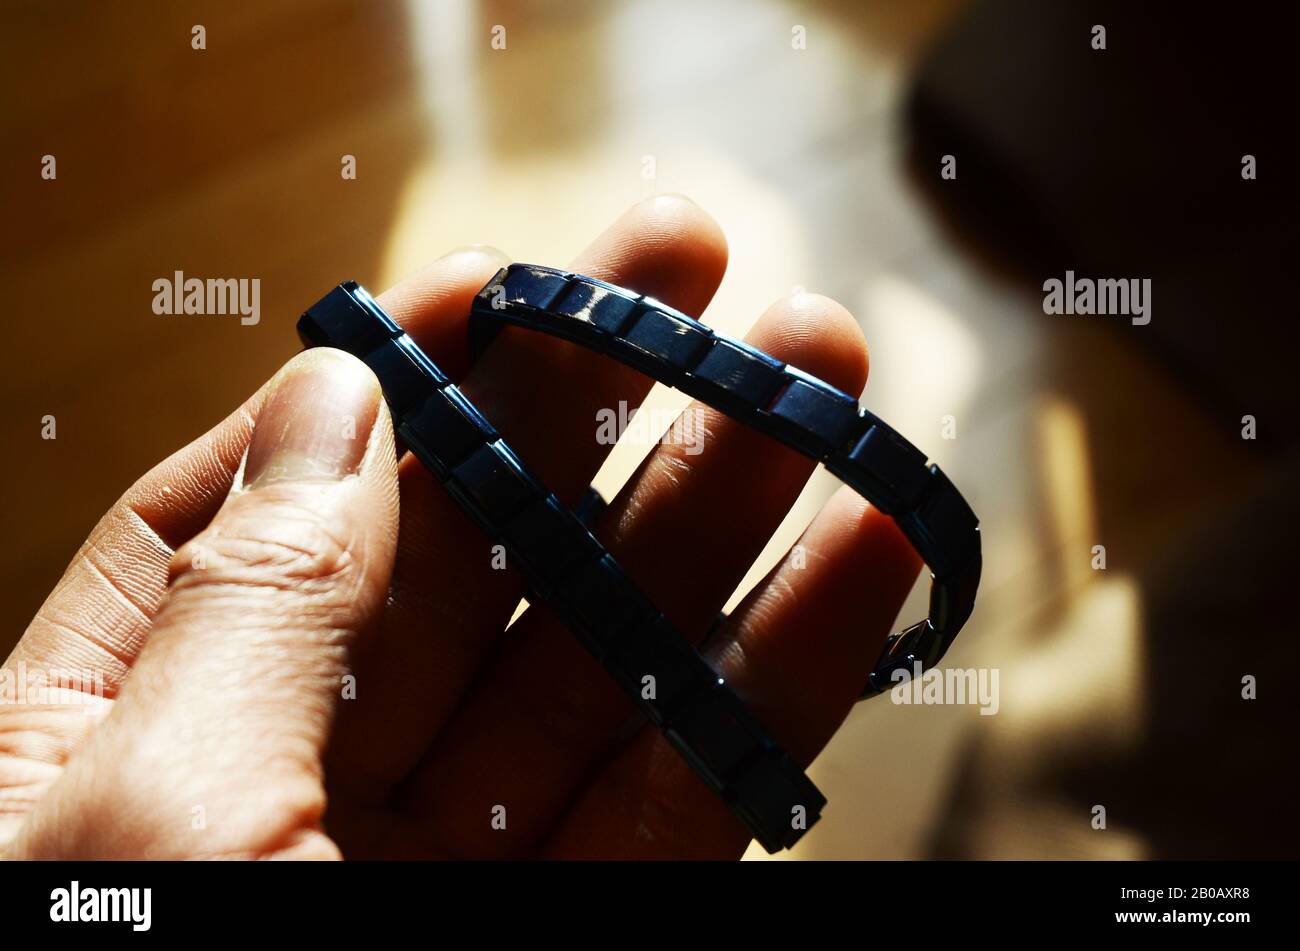 DÉPLACEMENT POLAIRE : un homme exerce son poignet à l'aide d'un bracelet magnétique contenant des pierres tourmaline pour augmenter la force. Banque D'Images